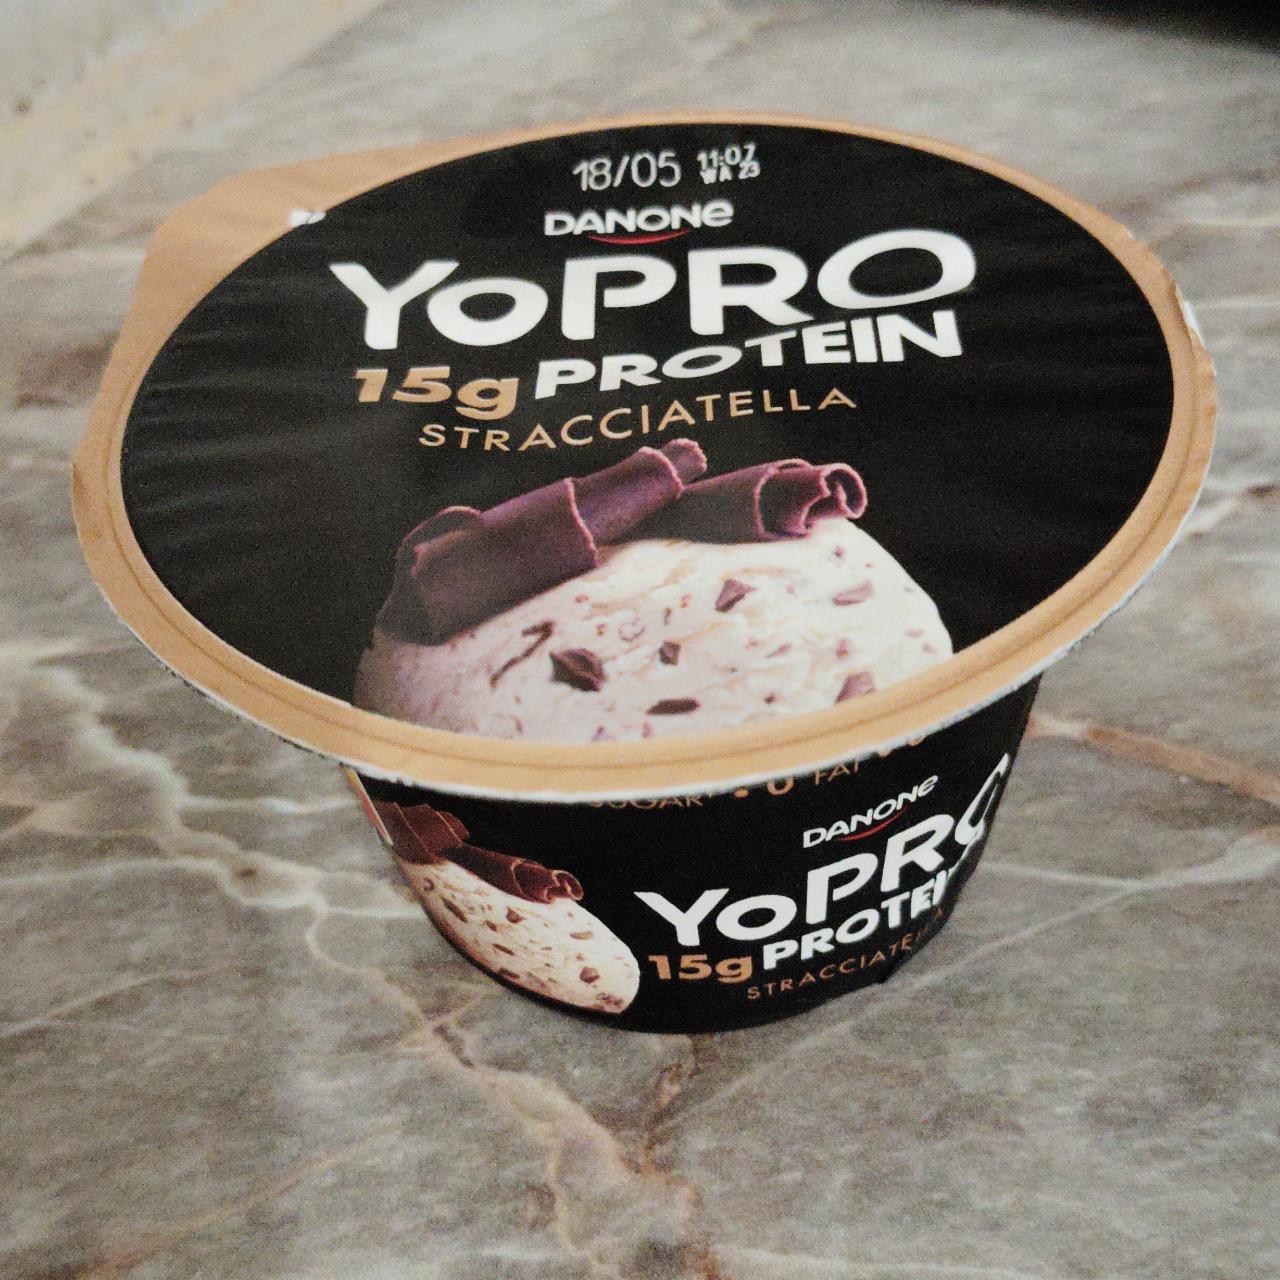 Фото - йогурт протеиновый со вкусом страчателла с шоколадной крошкой YoPro Danone